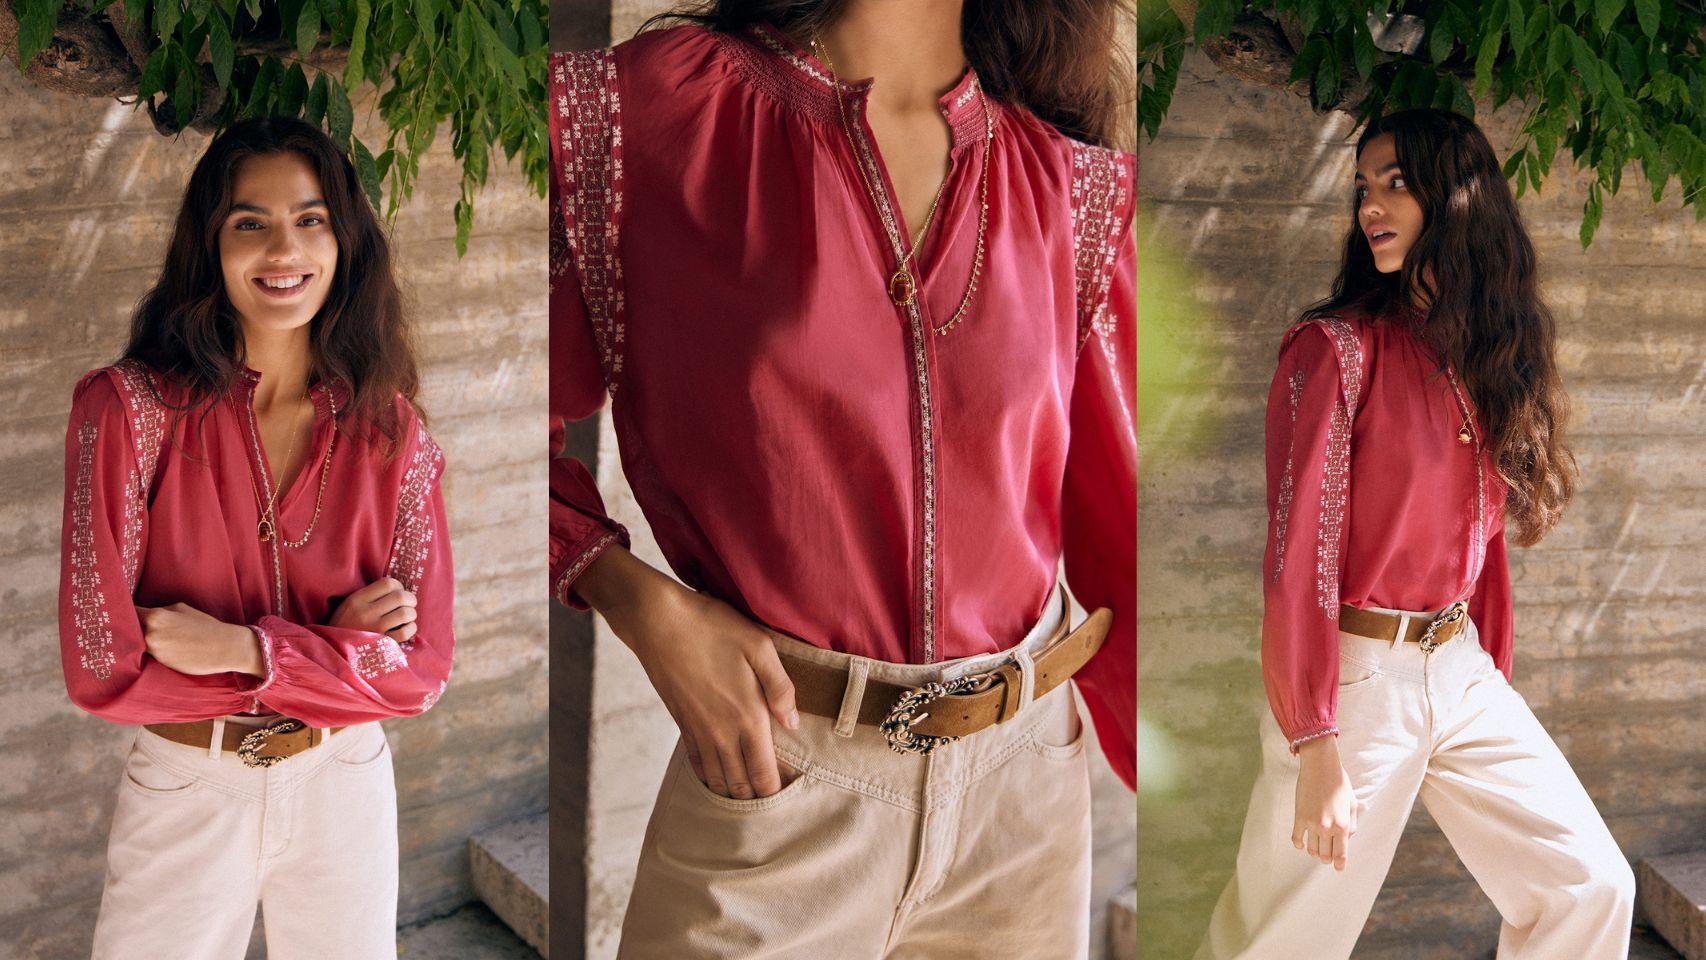 Blusa de algodón bordada (99,00€) de Hoss Intropia.